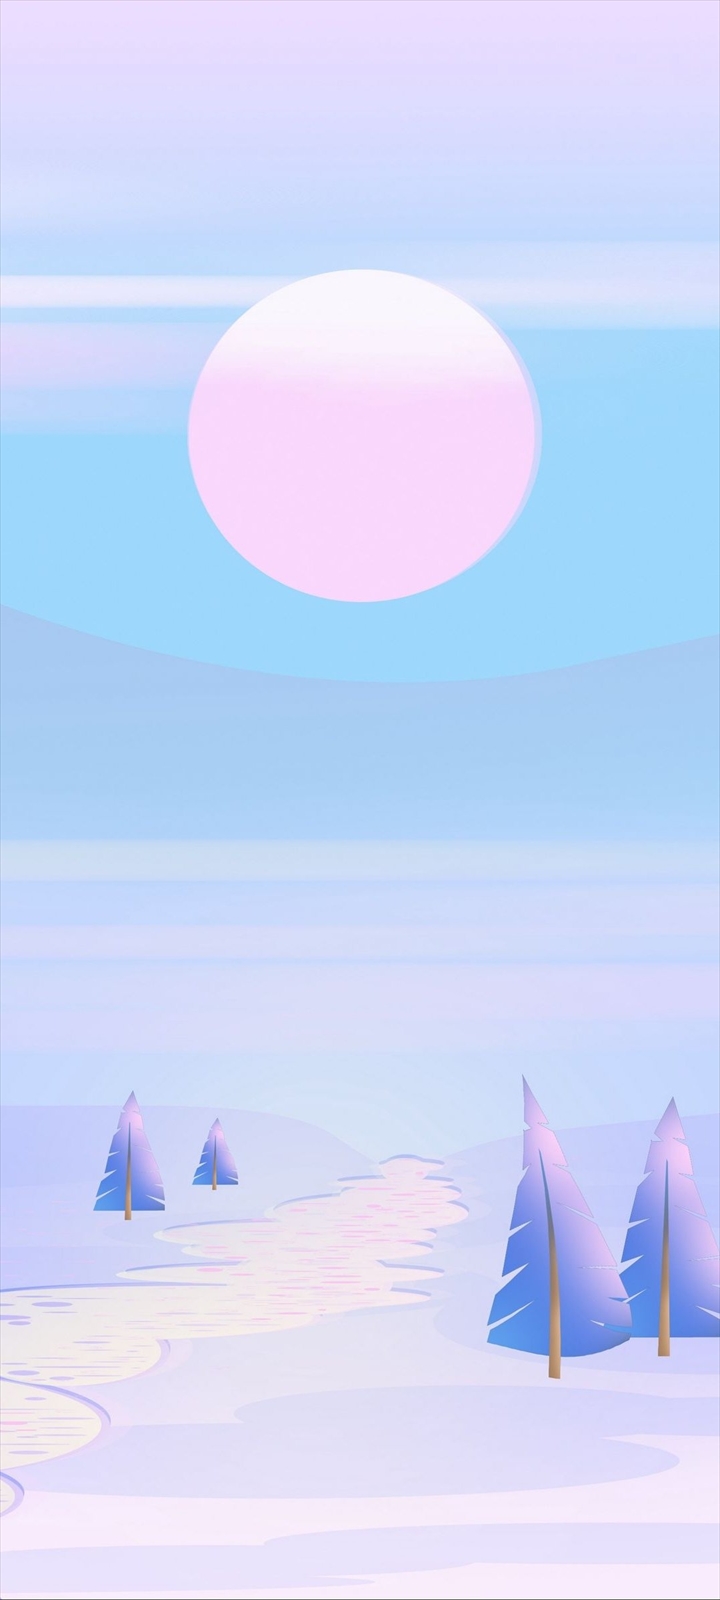 ピンクと水色の月と雪原地帯 イラスト Galaxy A32 5g Androidスマホ壁紙 待ち受け スマラン